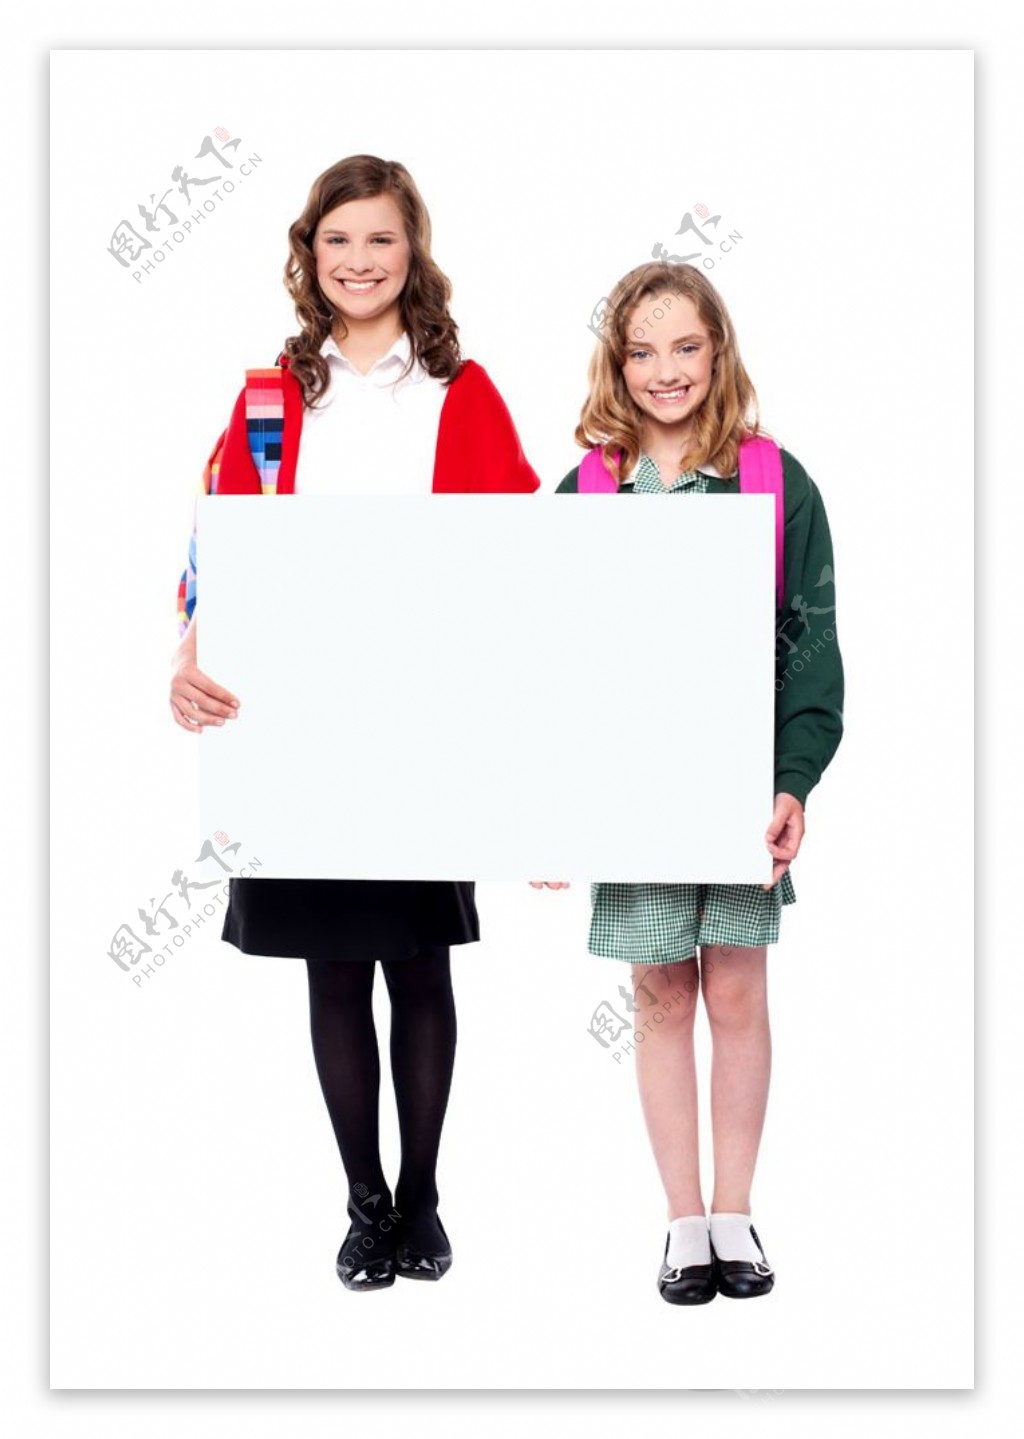 一起抱着白板的女人和小女孩图片